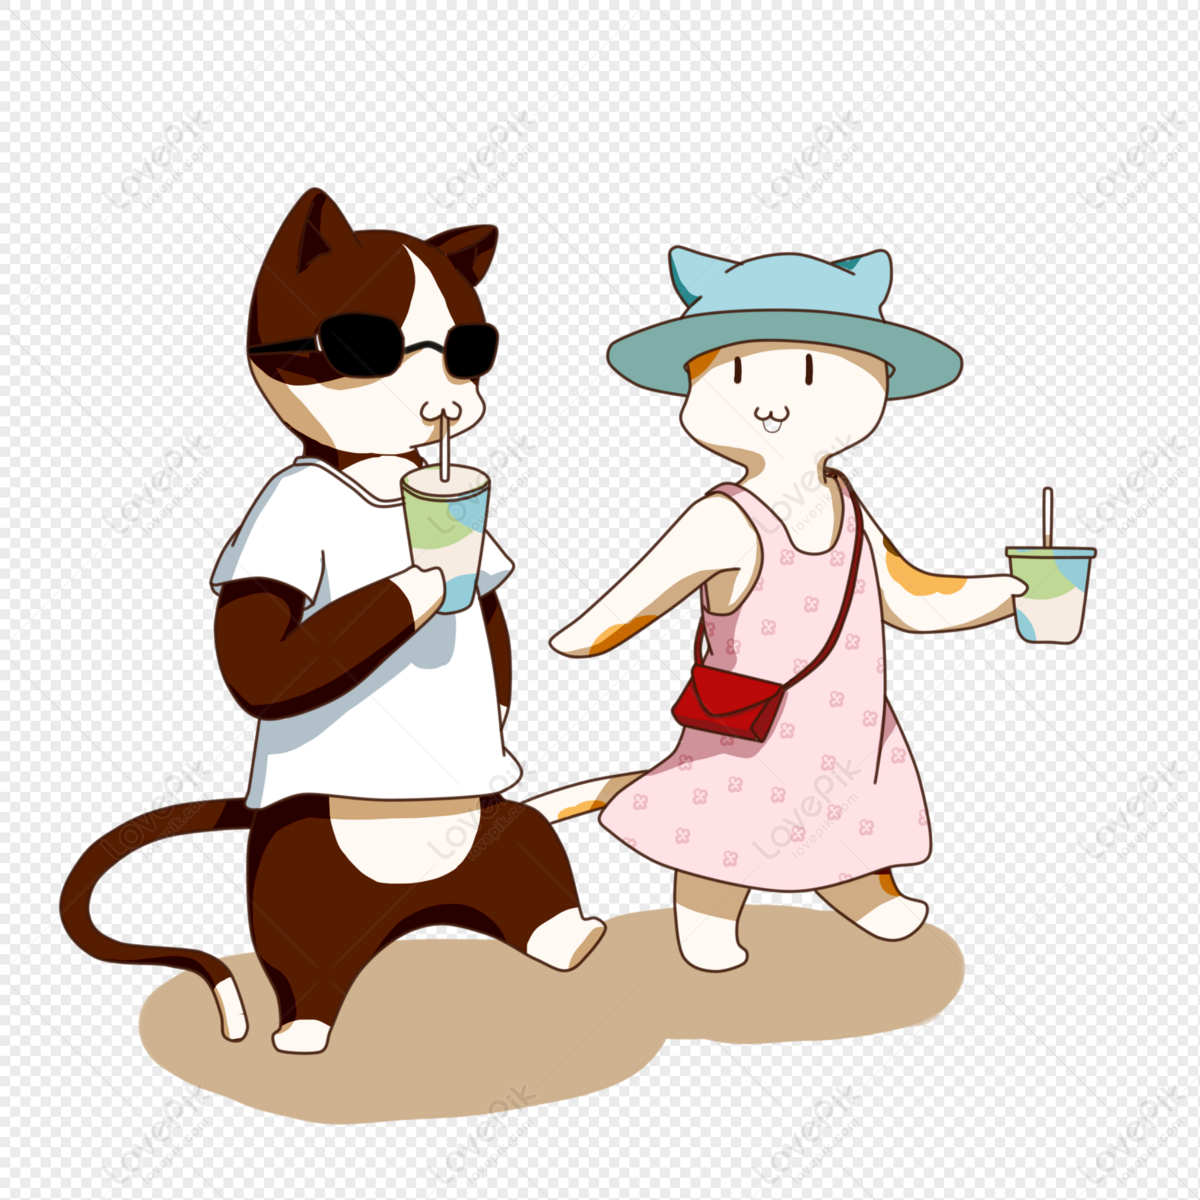 Mèo uống trà sữa - Bạn đã từng thấy mèo thích thưởng thức trà sữa chưa? Hình ảnh mèo xinh xắn đang thưởng thức trà sữa sẽ khiến bạn muốn có một chú mèo cưng và cùng nhau thưởng thức trà sữa ngọt ngào trong một buổi chiều se lạnh.